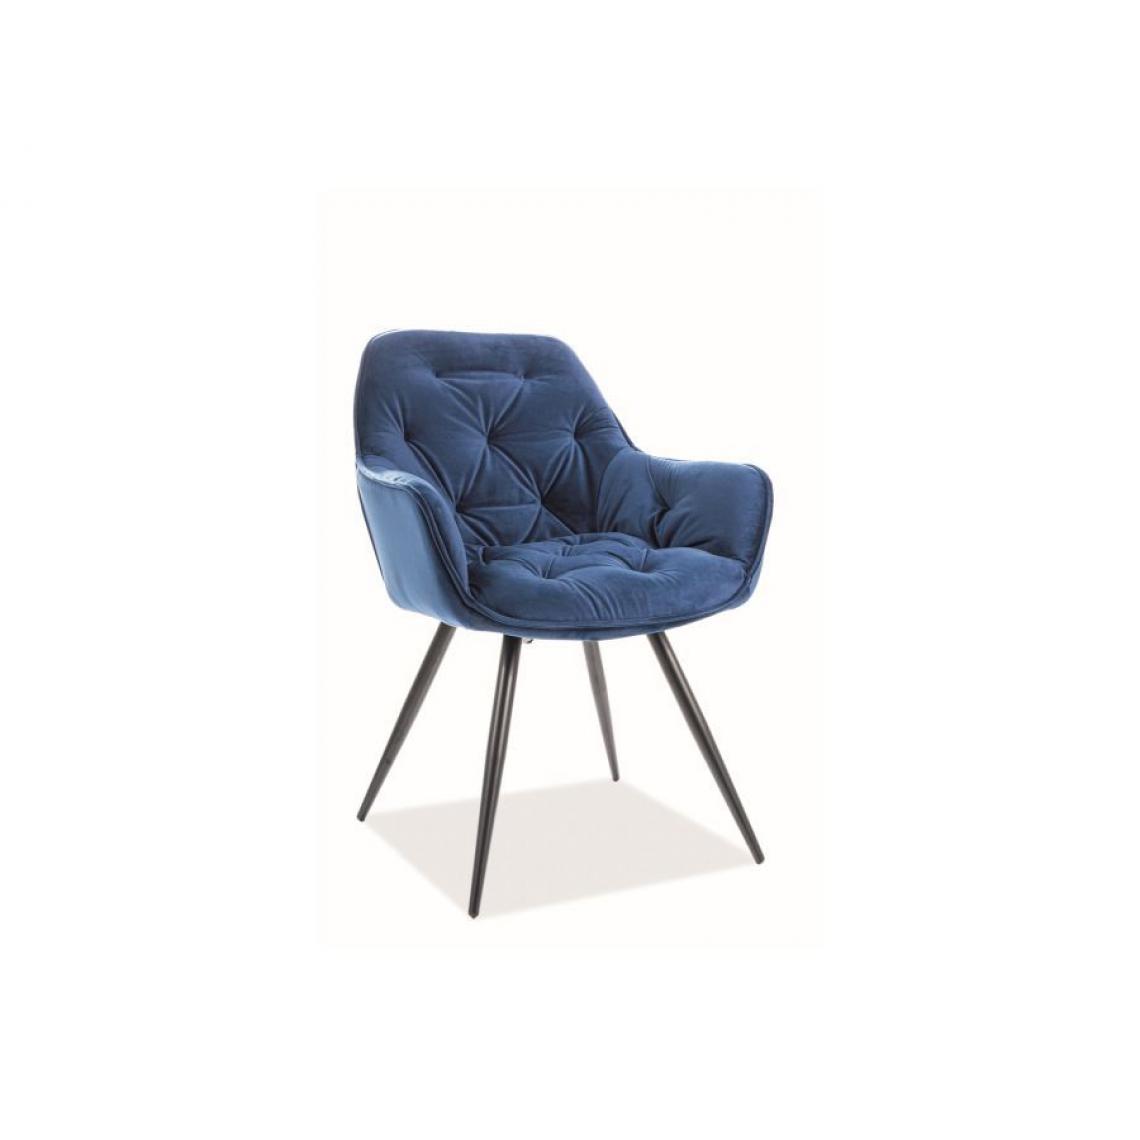 Hucoco - CHERLY | Chaise élégante + accoudoirs style glamour | Dimensions 83x45x44 cm | Rembourrage en velours | Pieds en métal - Bleu - Chaises